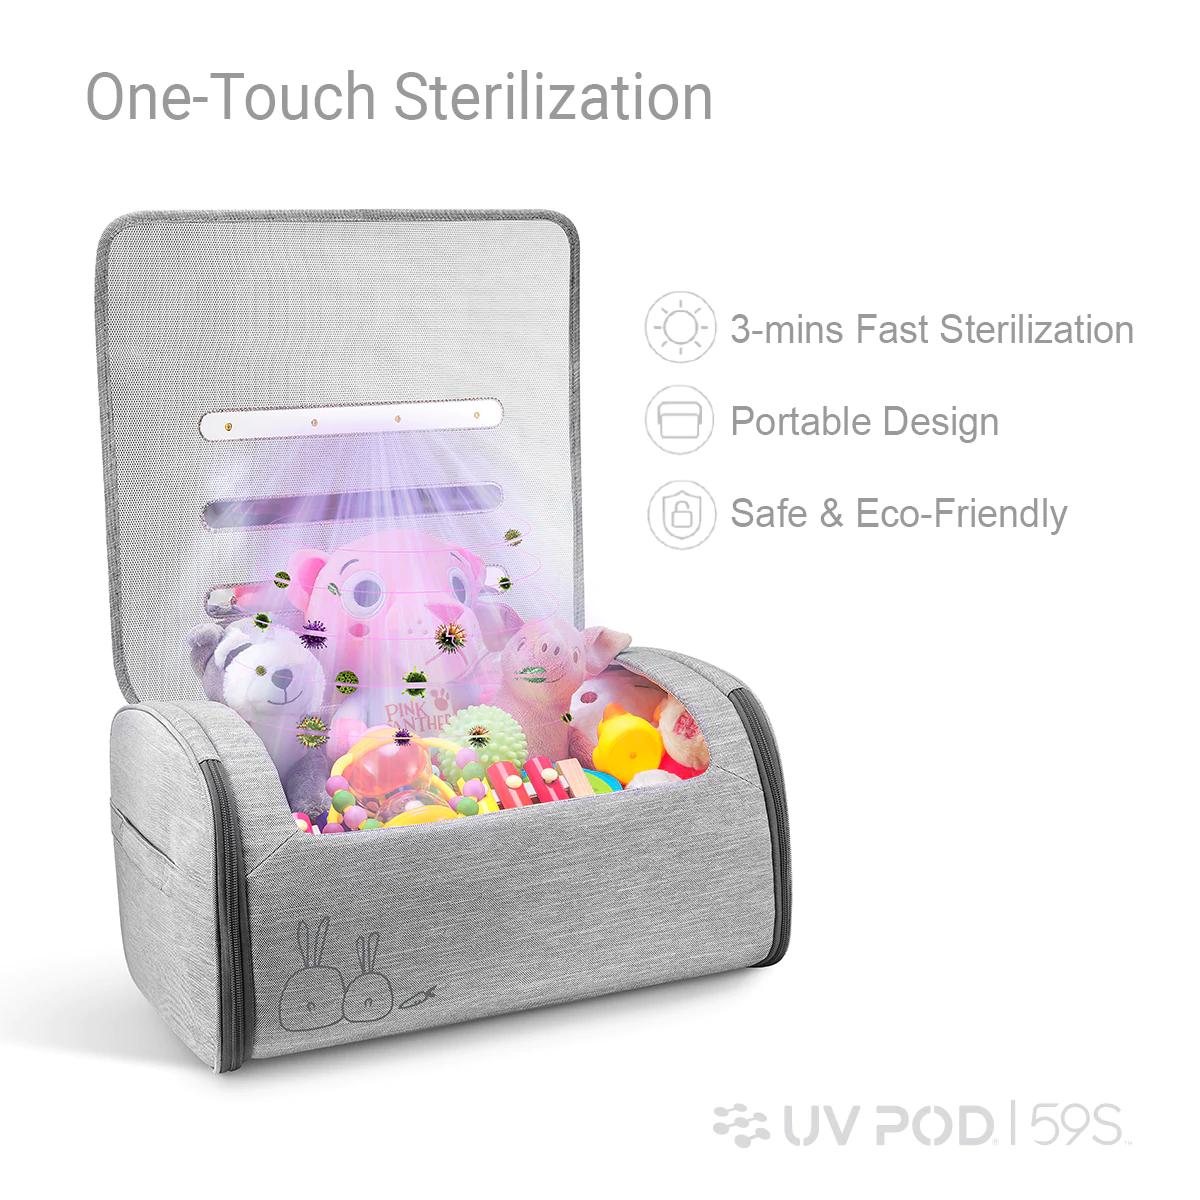 Product P18 Portable LED UV-C Storage for Toys | UV POD USA image